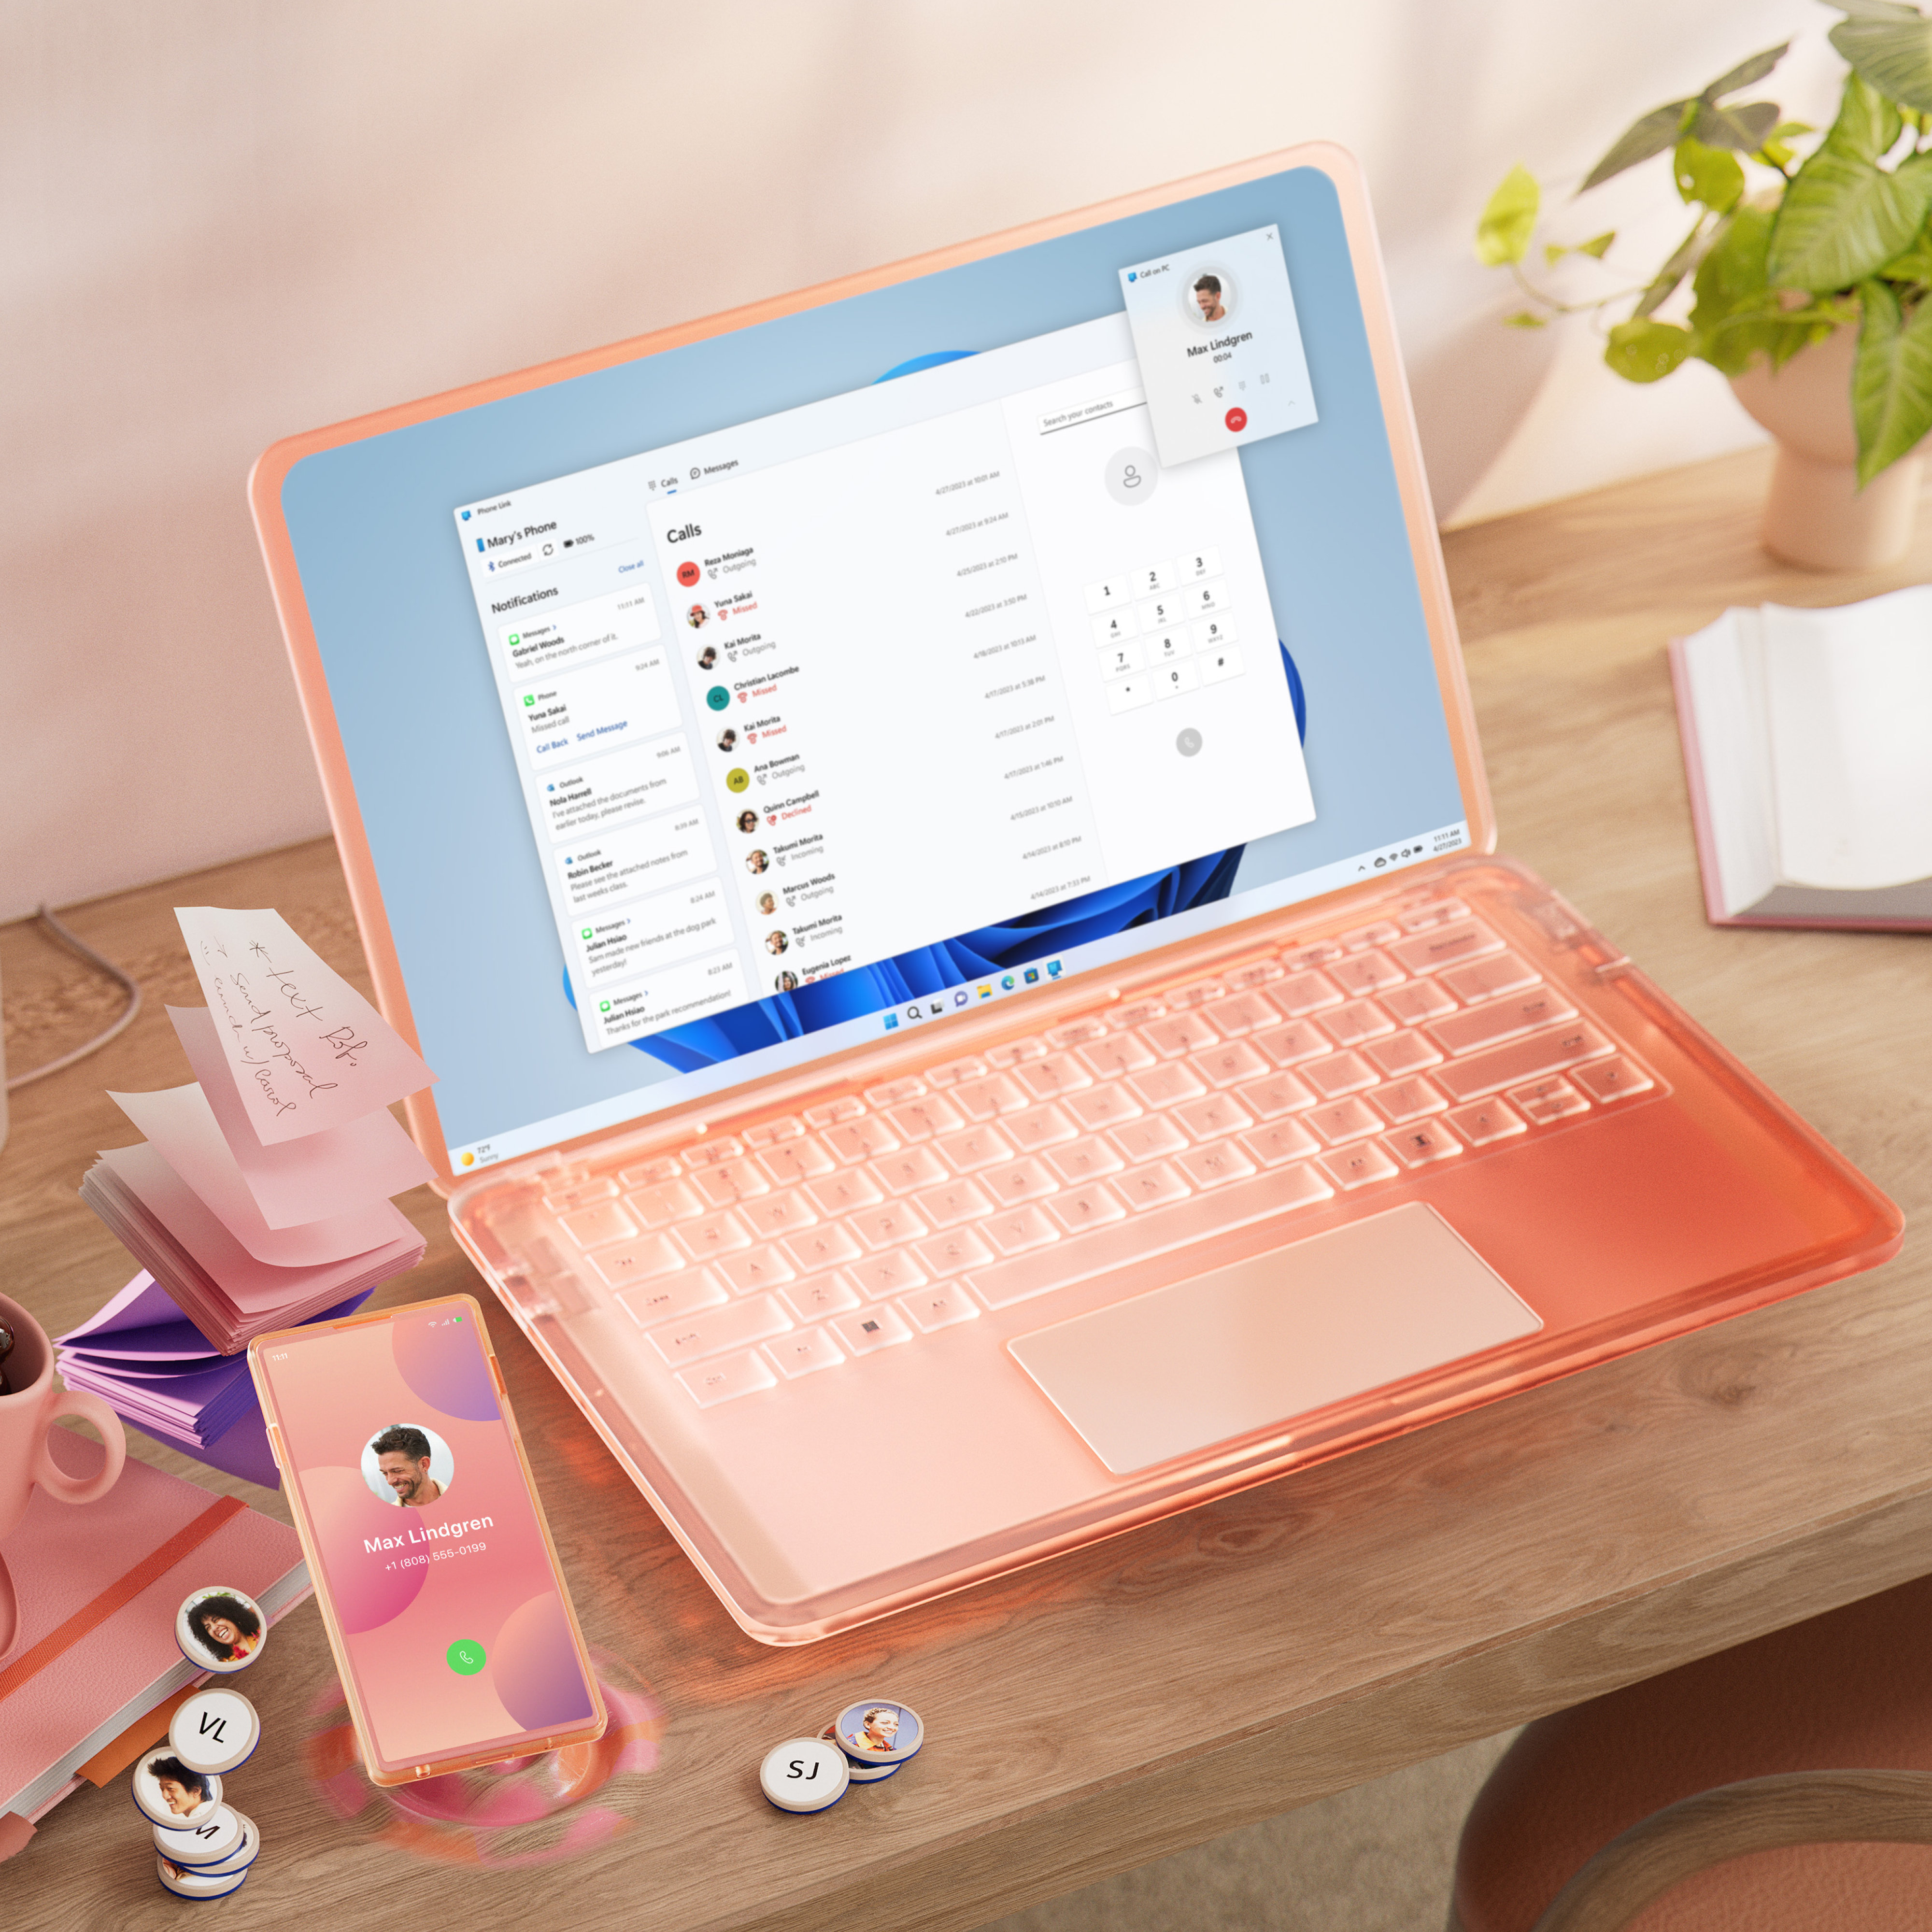 Chiếc PC và thiết bị di động có màn hình nền đầy màu sắc đang đặt trên bàn có một tách cà phê và bút